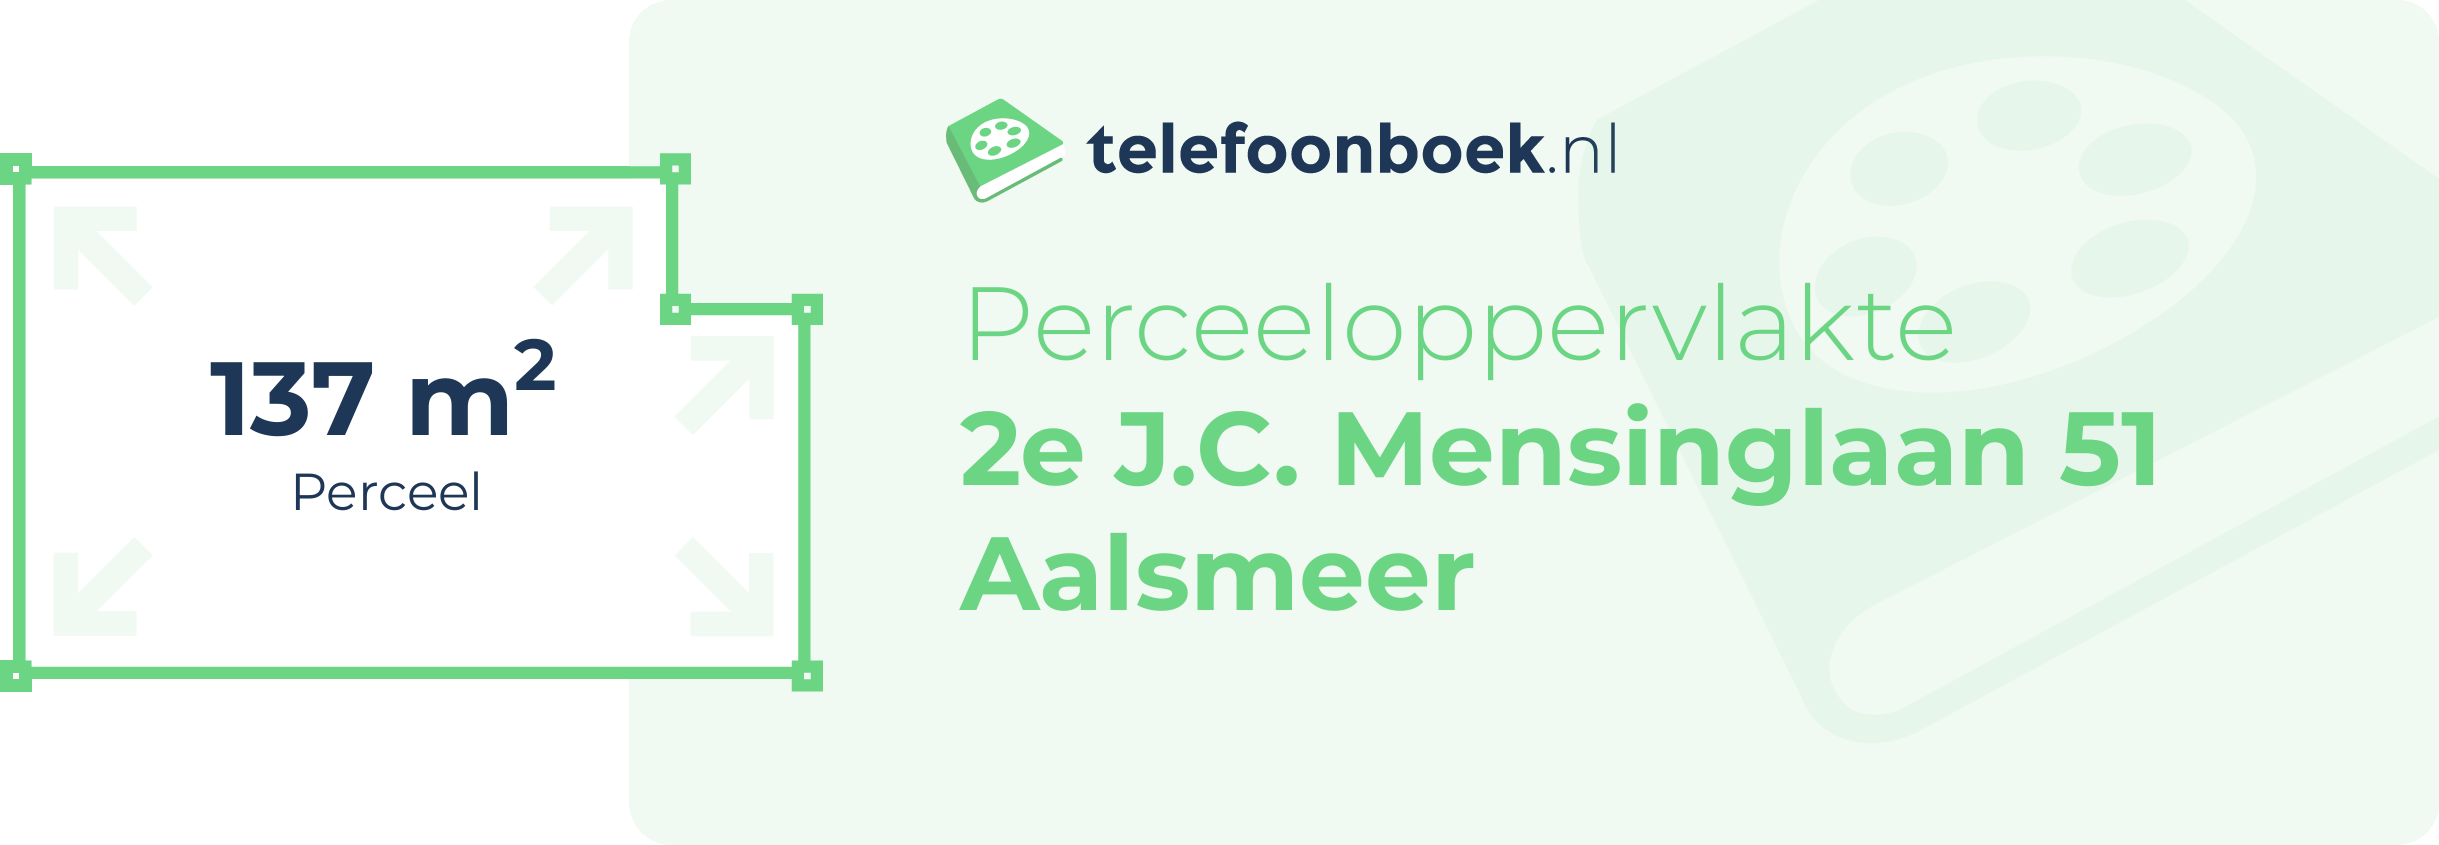 Perceeloppervlakte 2e J.C. Mensinglaan 51 Aalsmeer